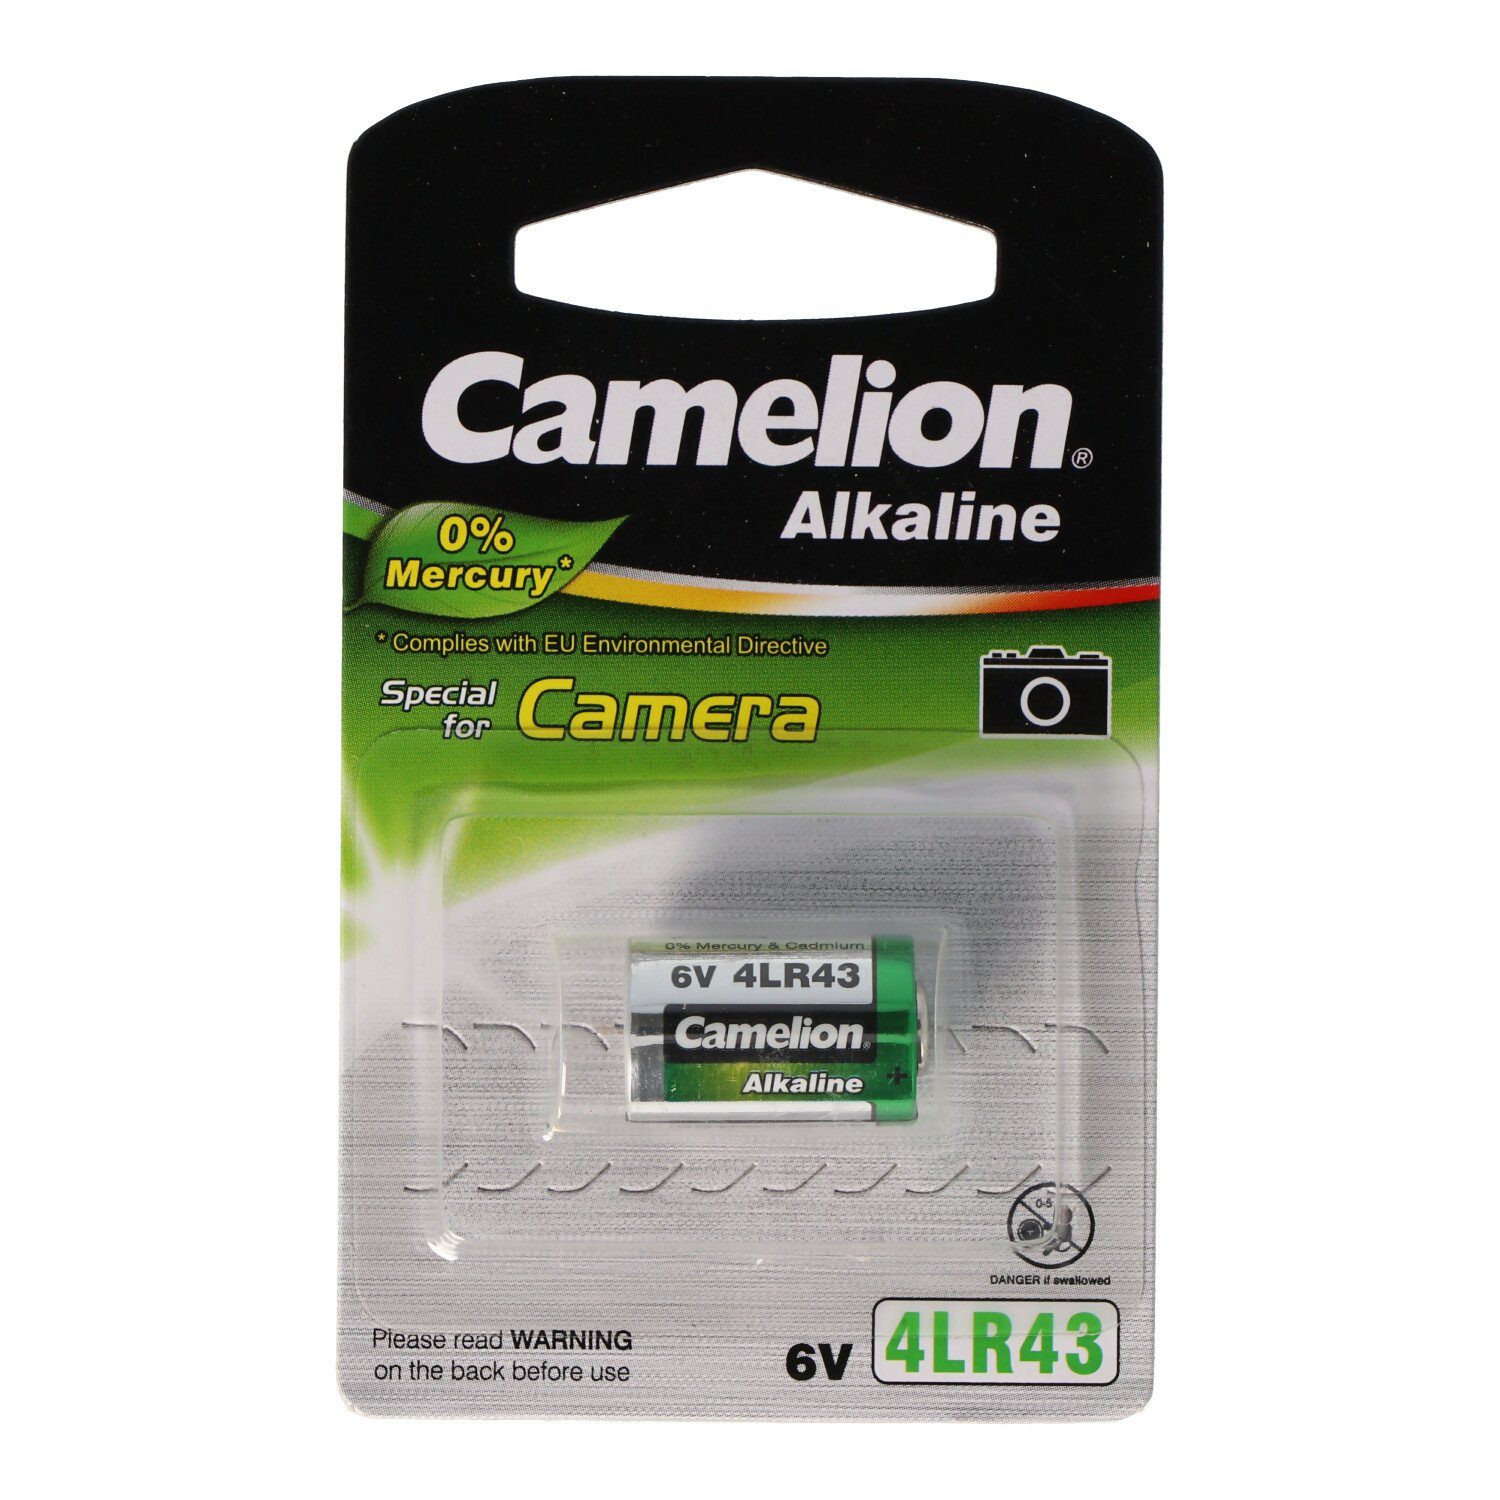 Camelion Alkaline Batterie, Photo 4LR43, x 12,7 4AG12, 4NR43, 6Volt Fotobatterie, (6,0 EPX27 PX27 V)